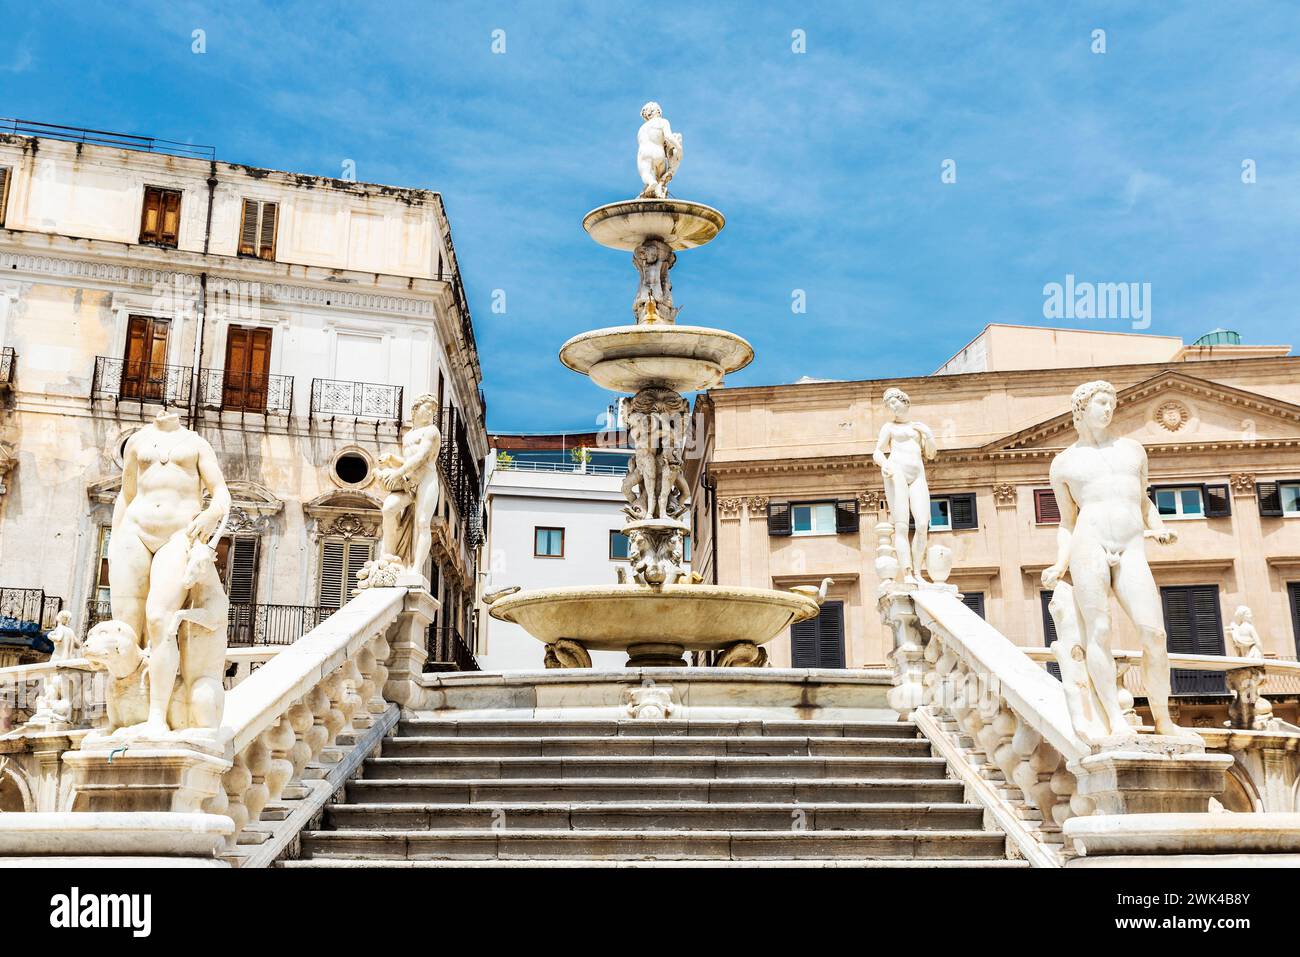 La Fontaine prétorienne ou Fontana Pretoria, est une fontaine monumentale qui représente les douze Olympiens dans la vieille ville de Palerme, Sicile, Italie Banque D'Images